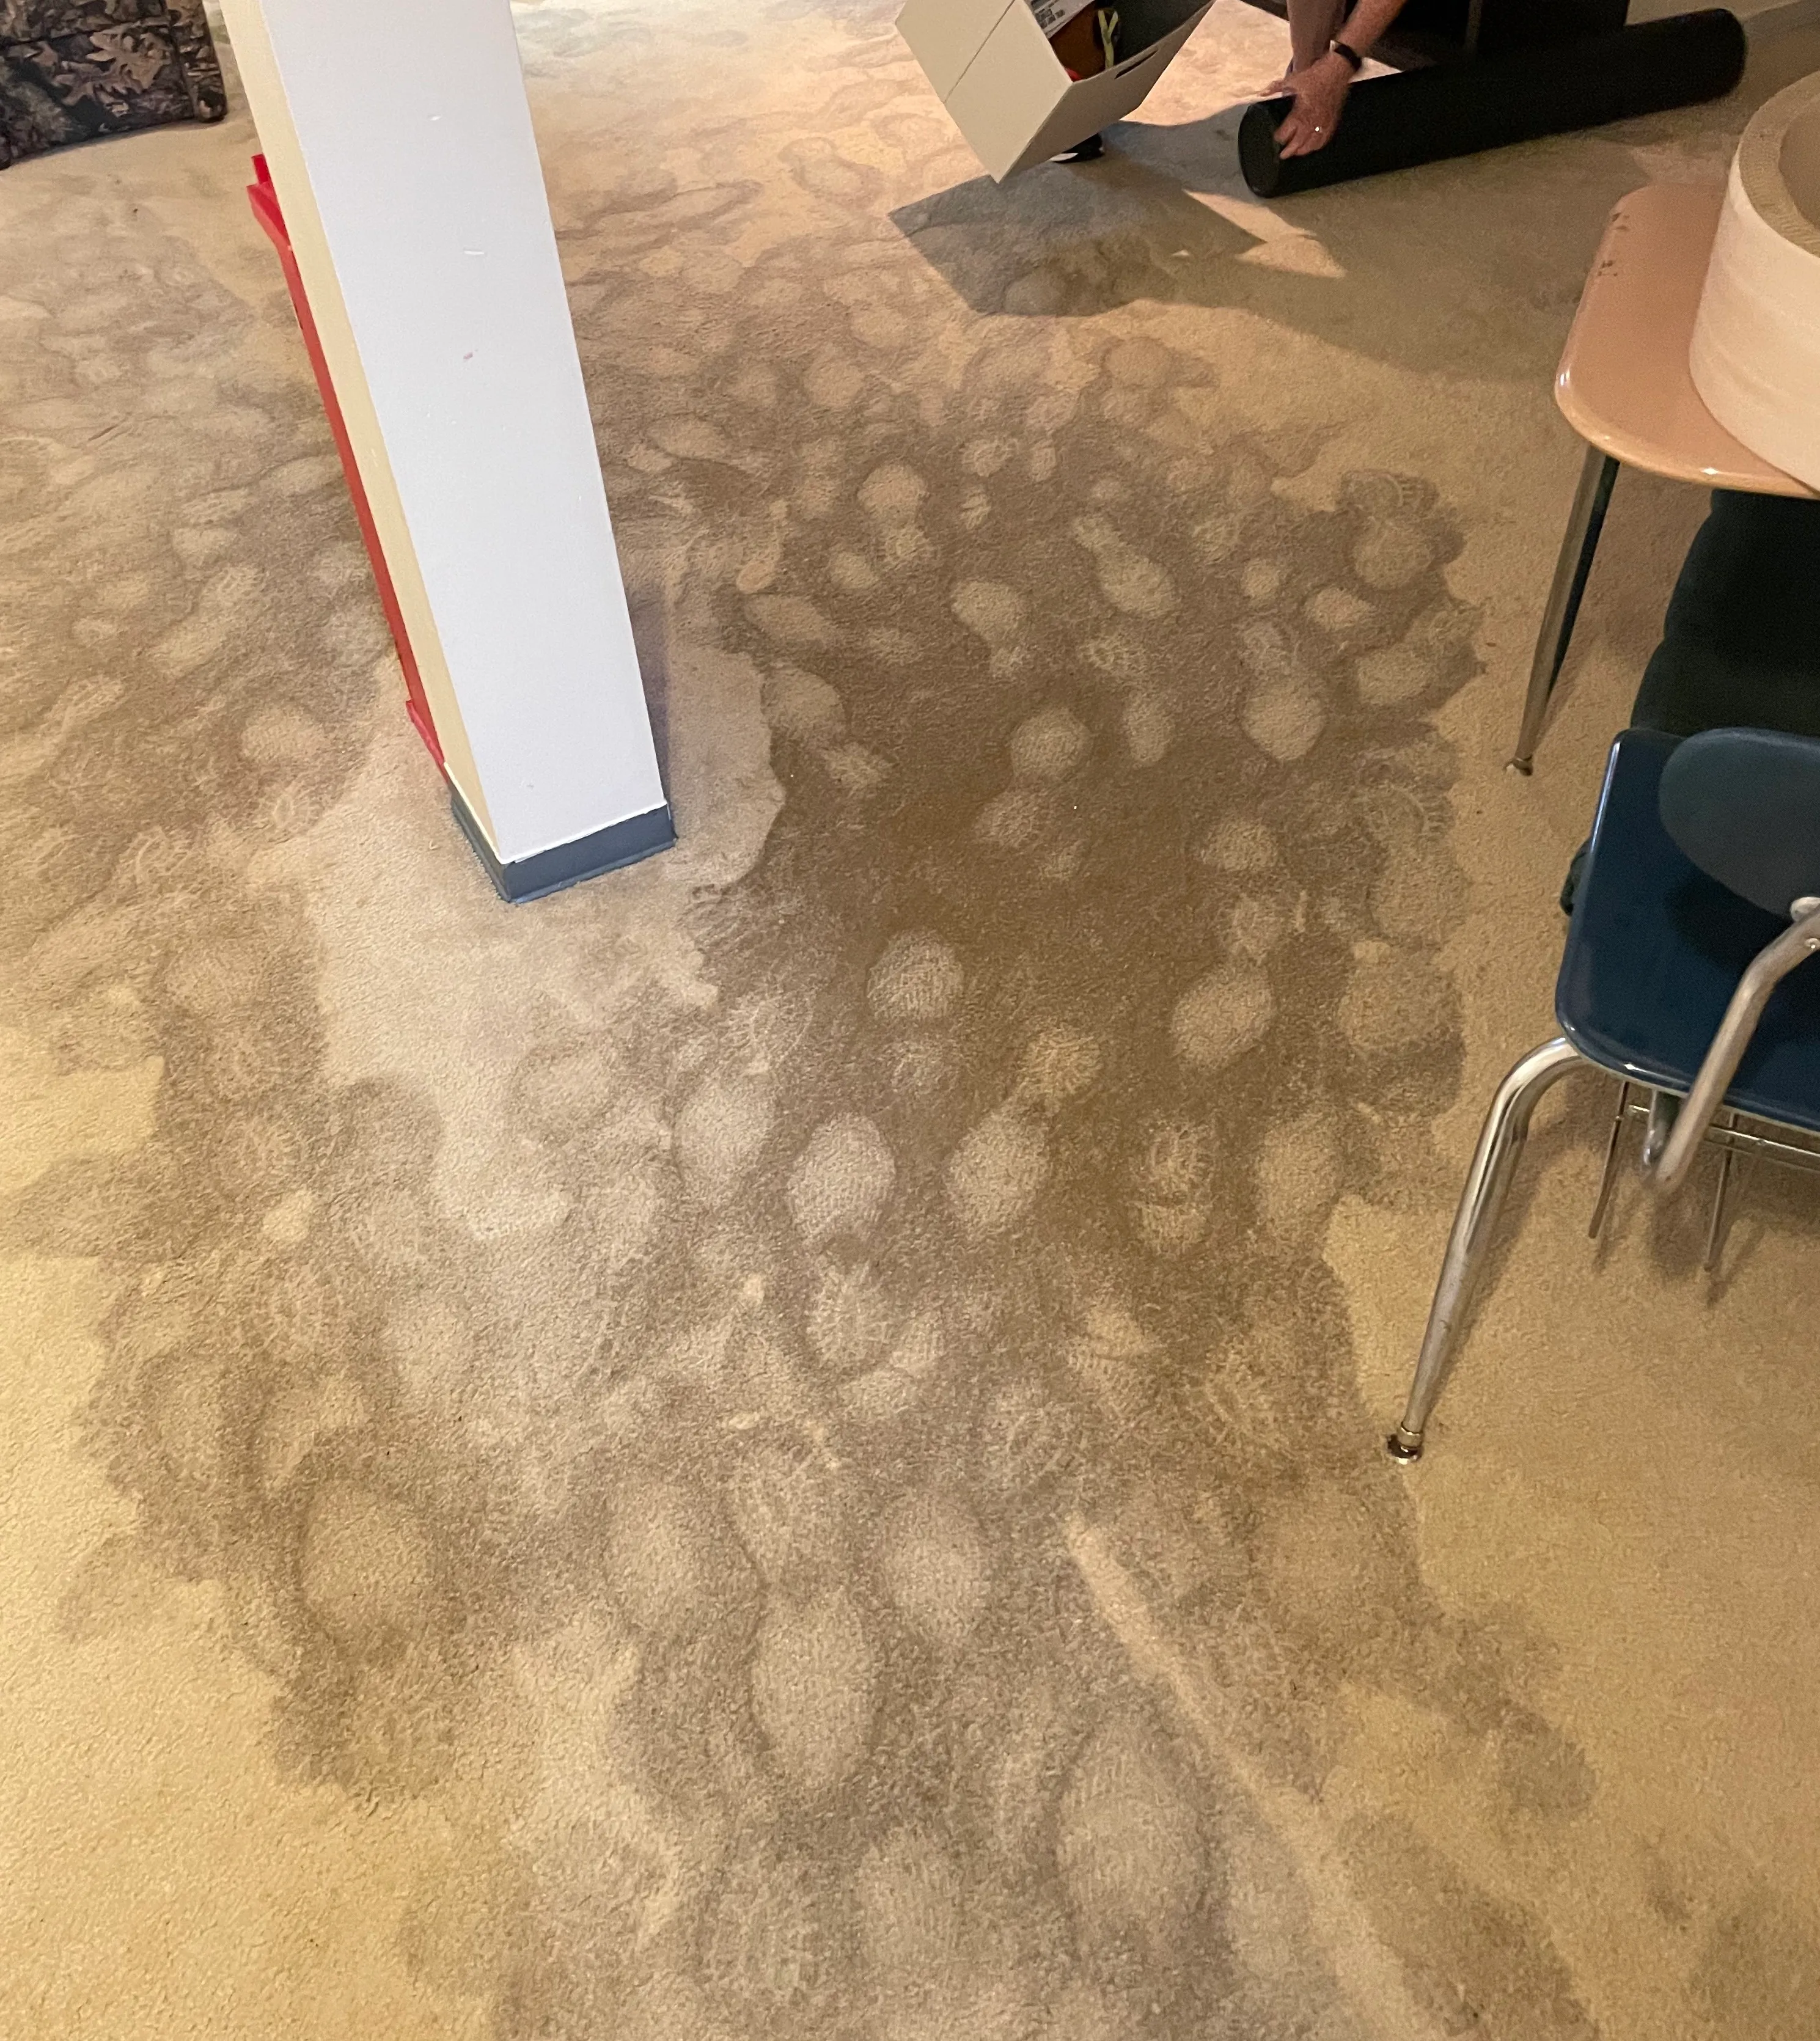 Wet footprints in carpet